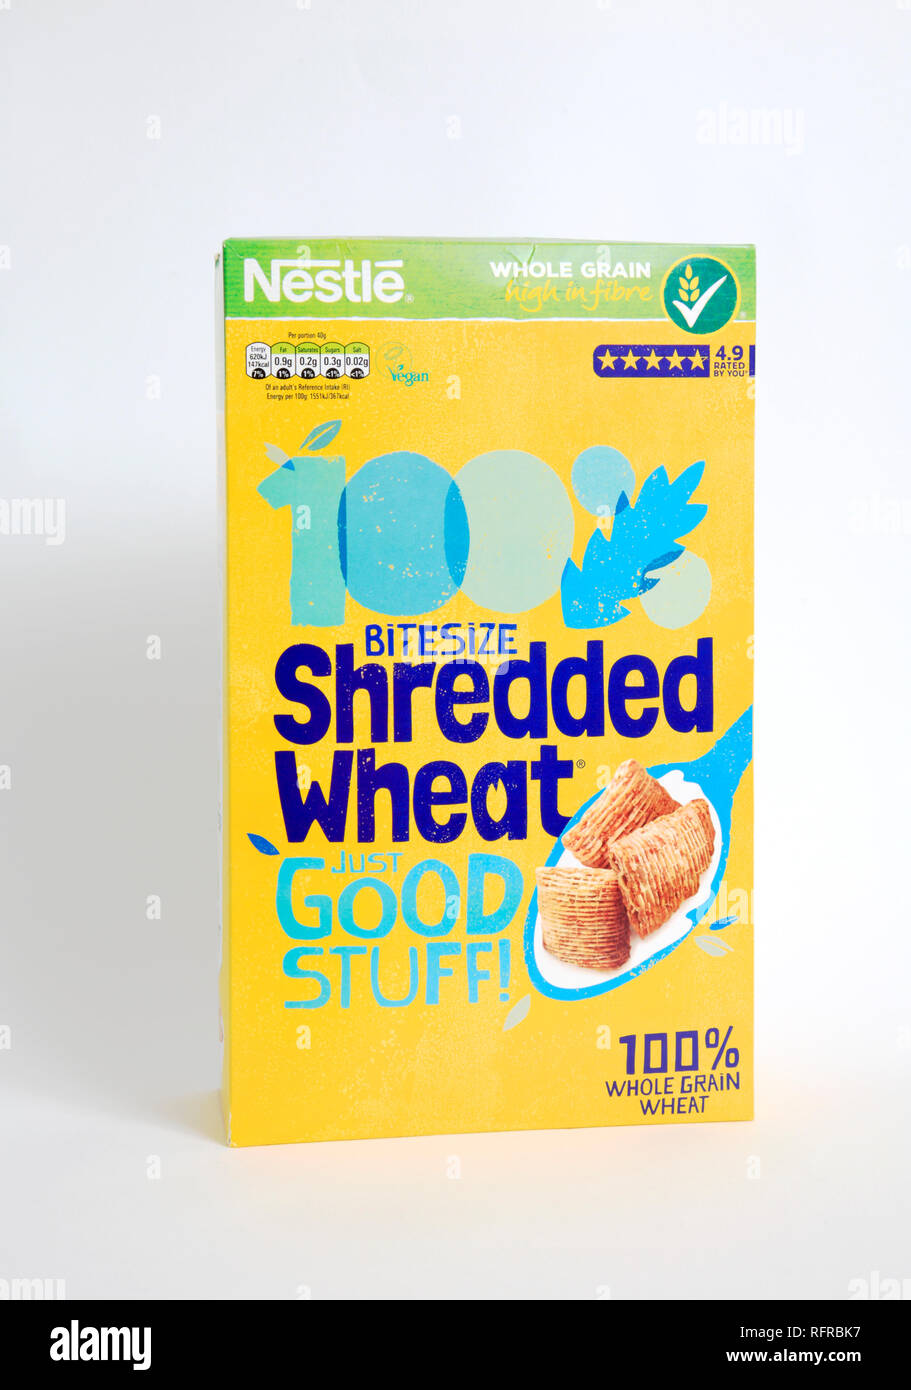 A packet of Nestle Bitesize Shredded Wheat breakfast cereal. Stock Photo